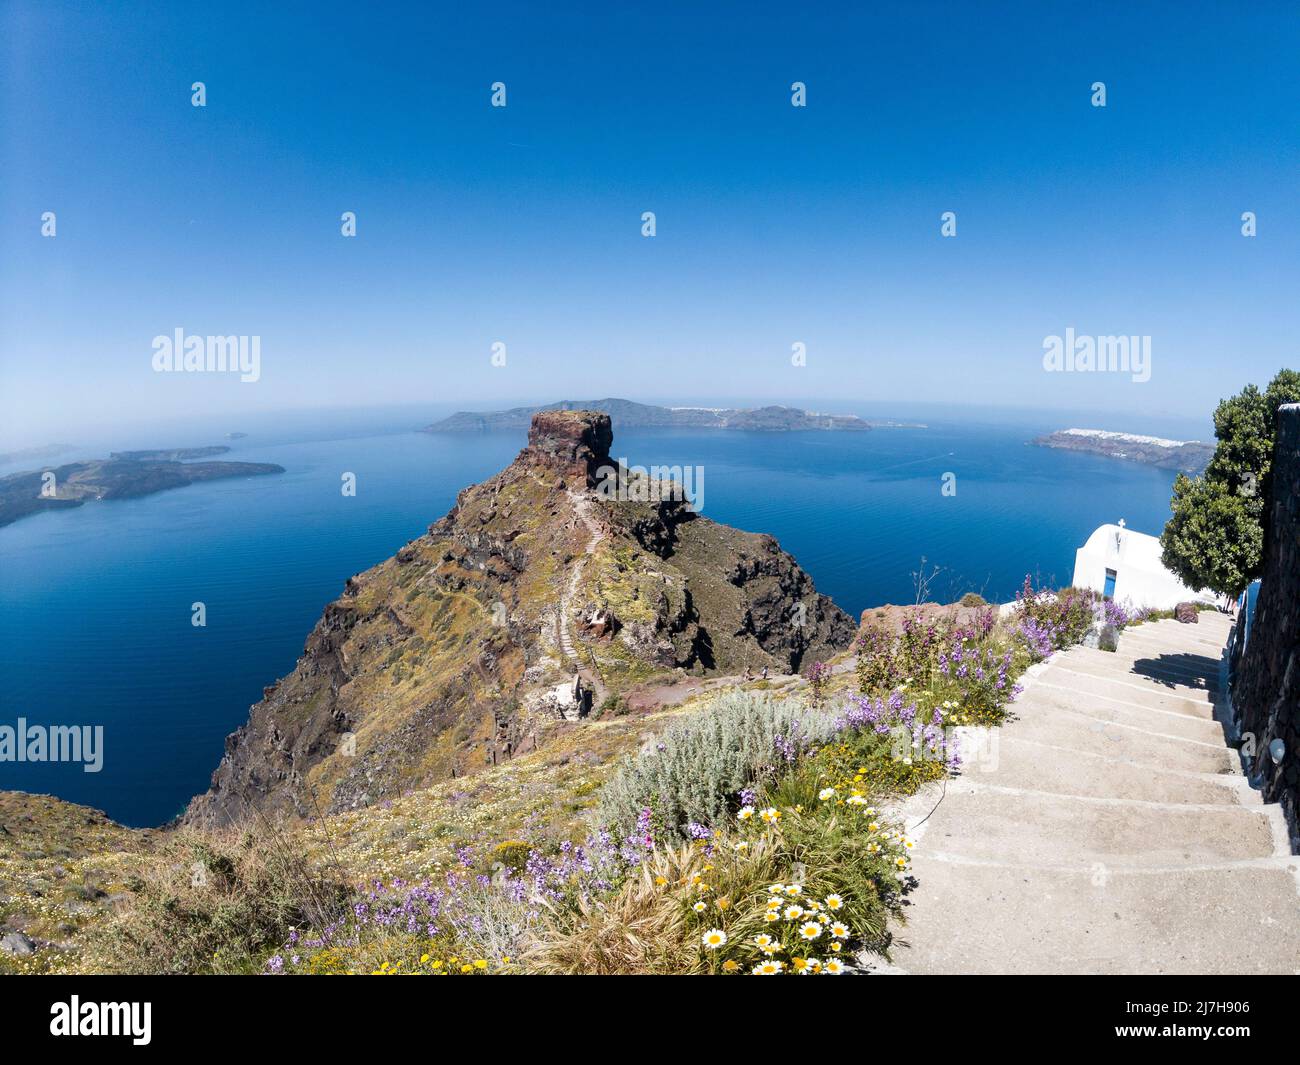 Wunderschöne Aussicht auf den Felshügel von Skaros, auf der Insel Santorini, Griechenland, und Meerblick auf den vulkanischen Teil von Santorini und die legendäre Caldera. Stockfoto